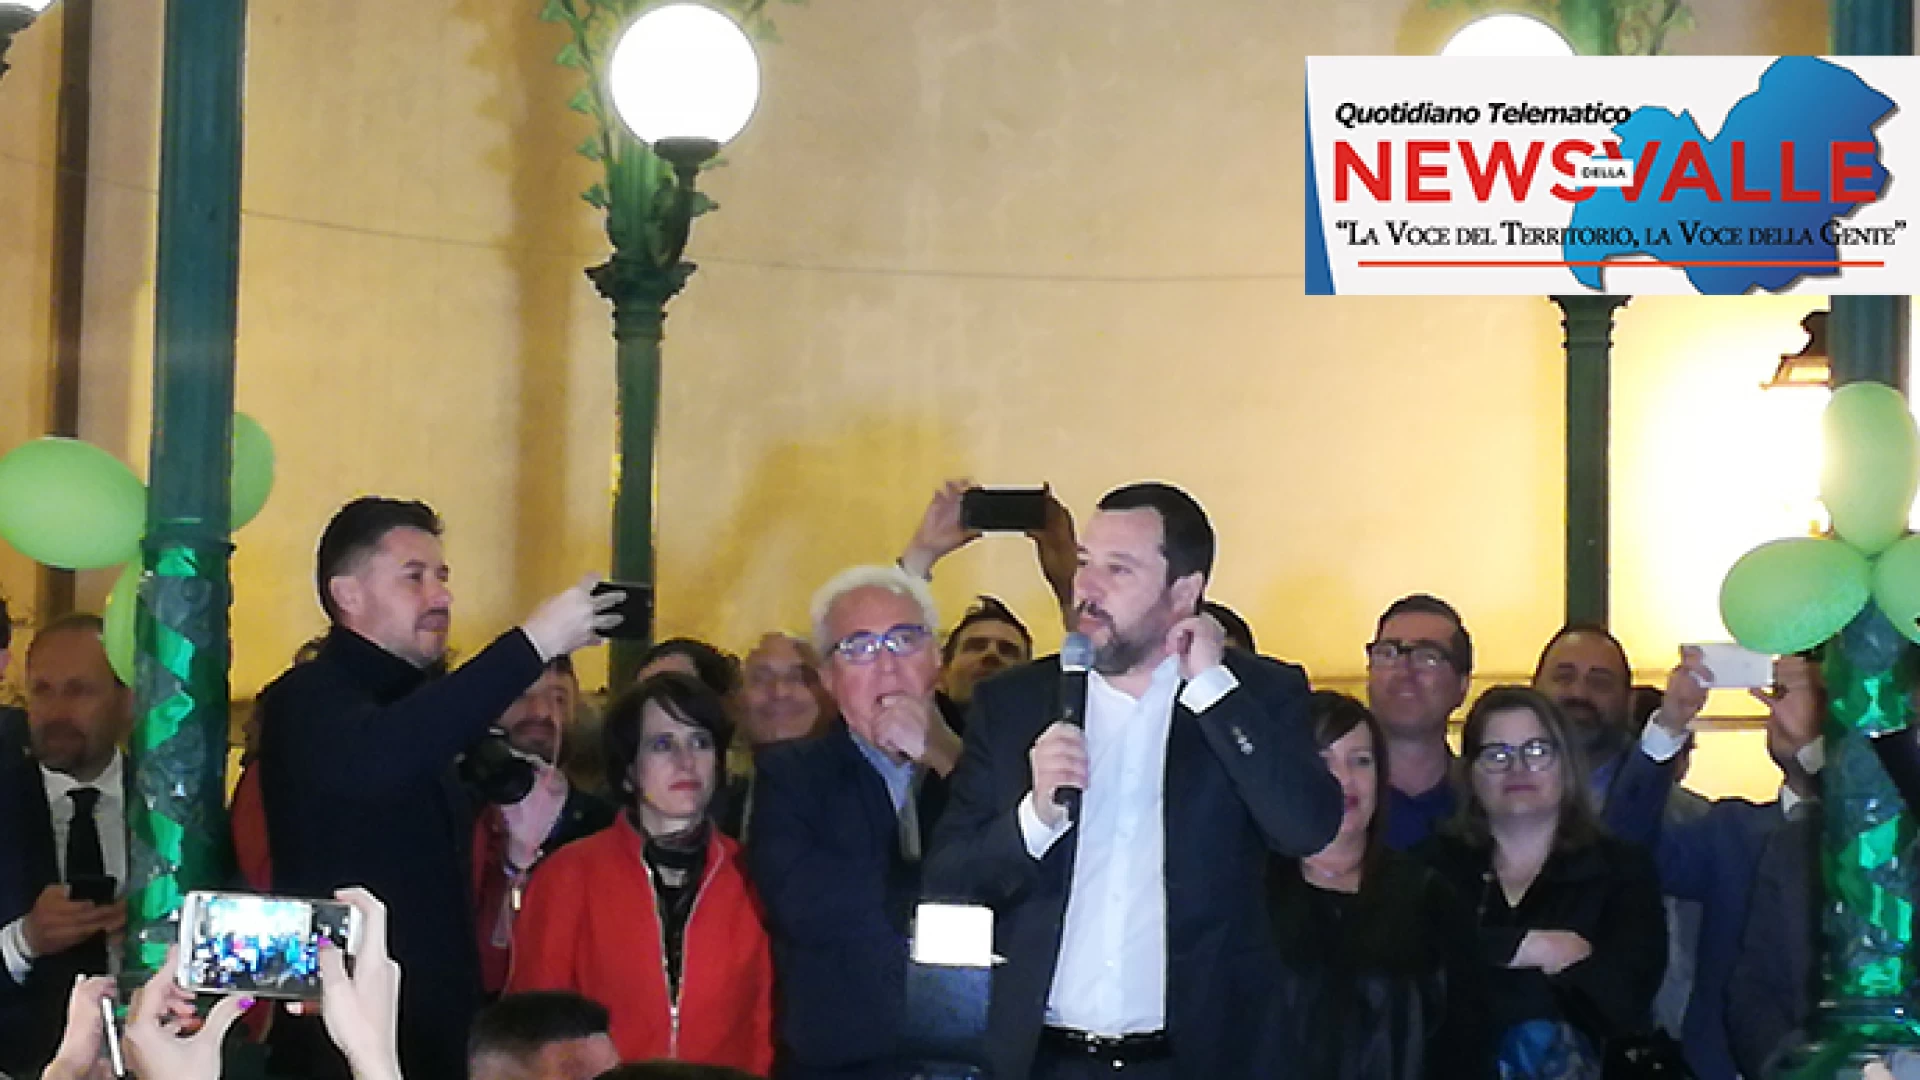 Salvini ad Isernia: “Tornerò a maggio da voi da presidente del Consiglio. Ora vinciamo le regionali”. Grande trepidazione ieri sera in città.